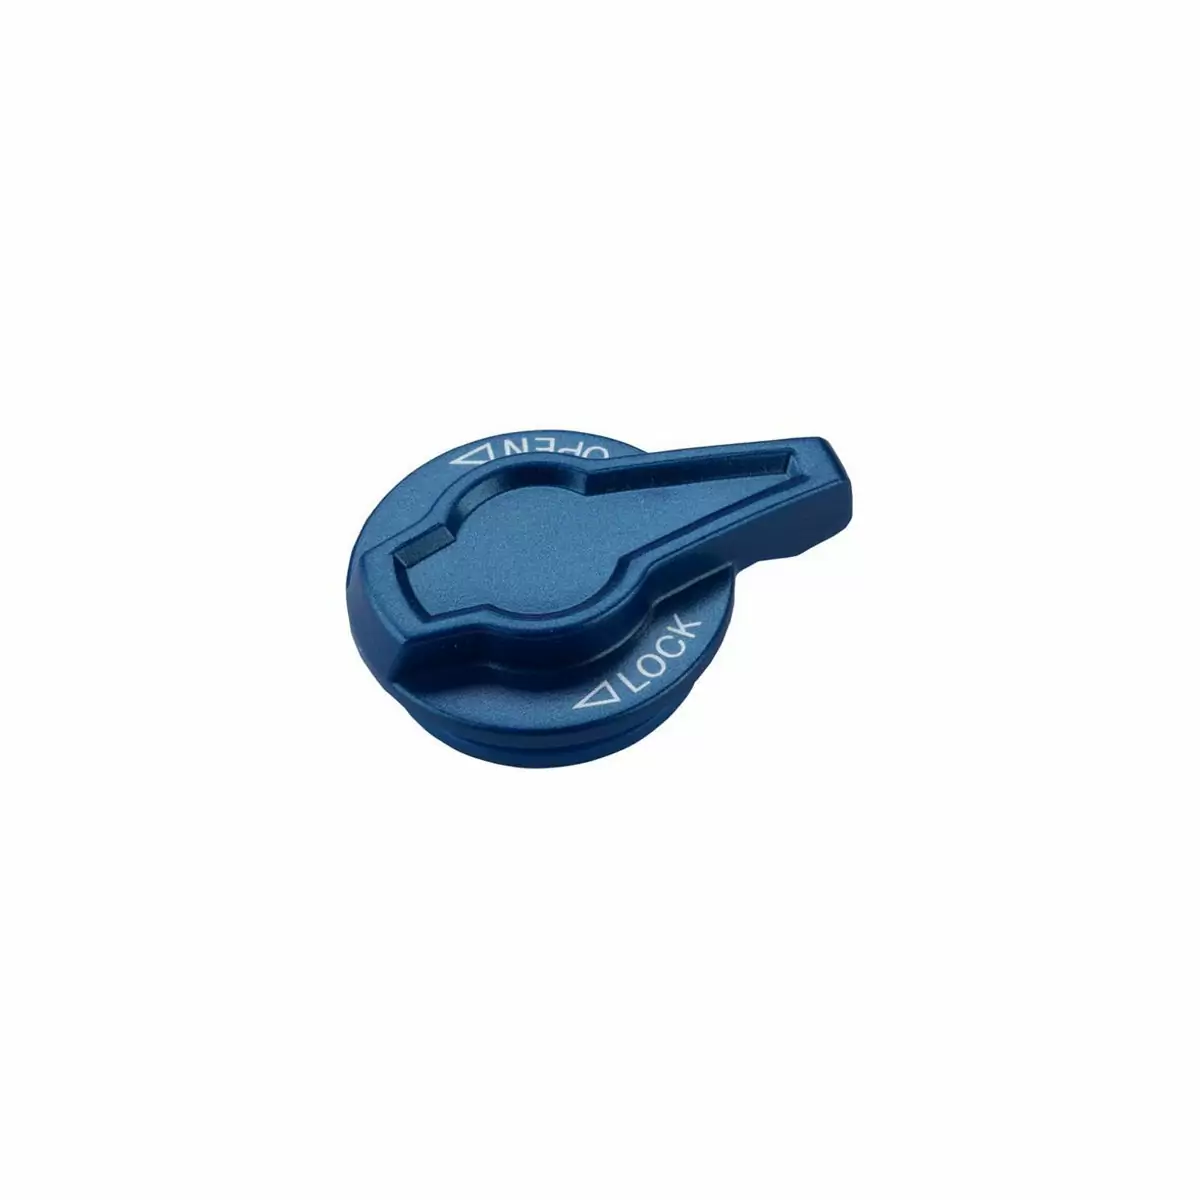 tappo girevole blu per cartuccia lo per SF15-XCR-LO/SF16-Raidon XC-LO - image